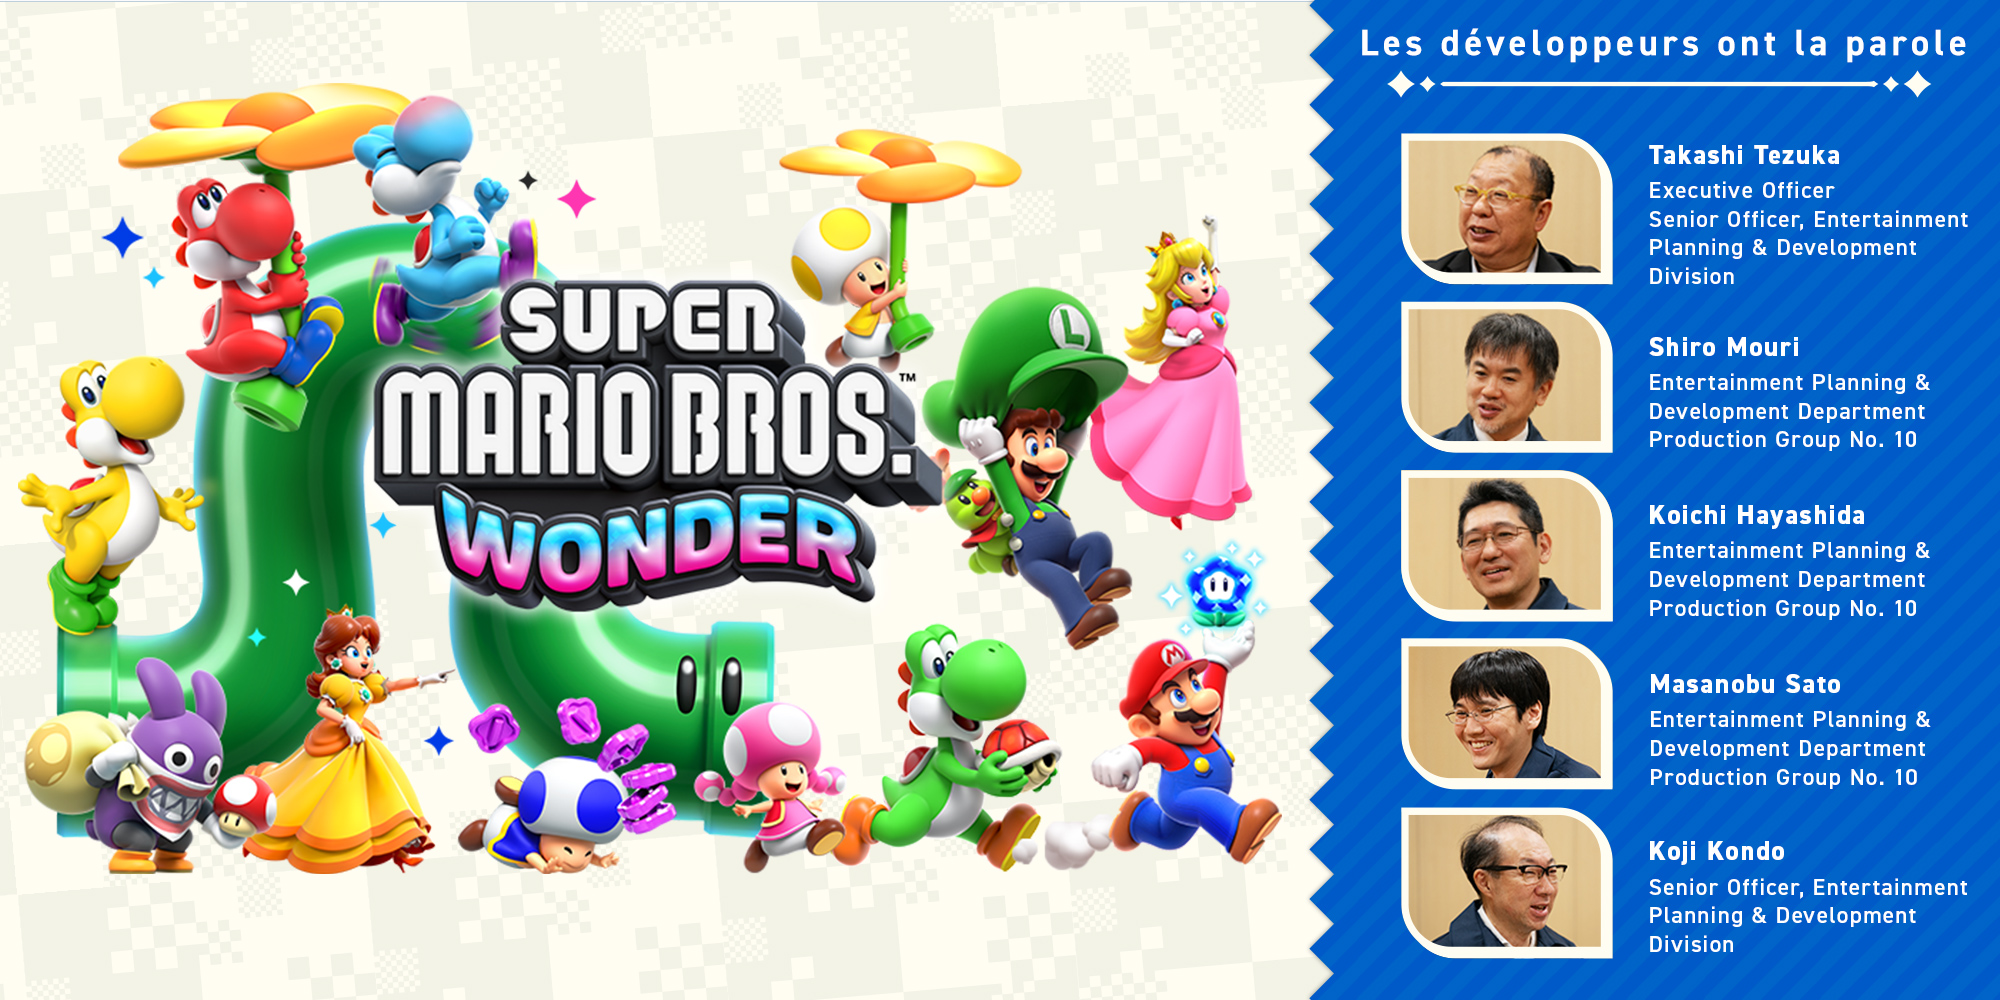 Les développeurs ont la parole, Vol. 11 : Super Mario Bros. Wonder – Chapitre 2